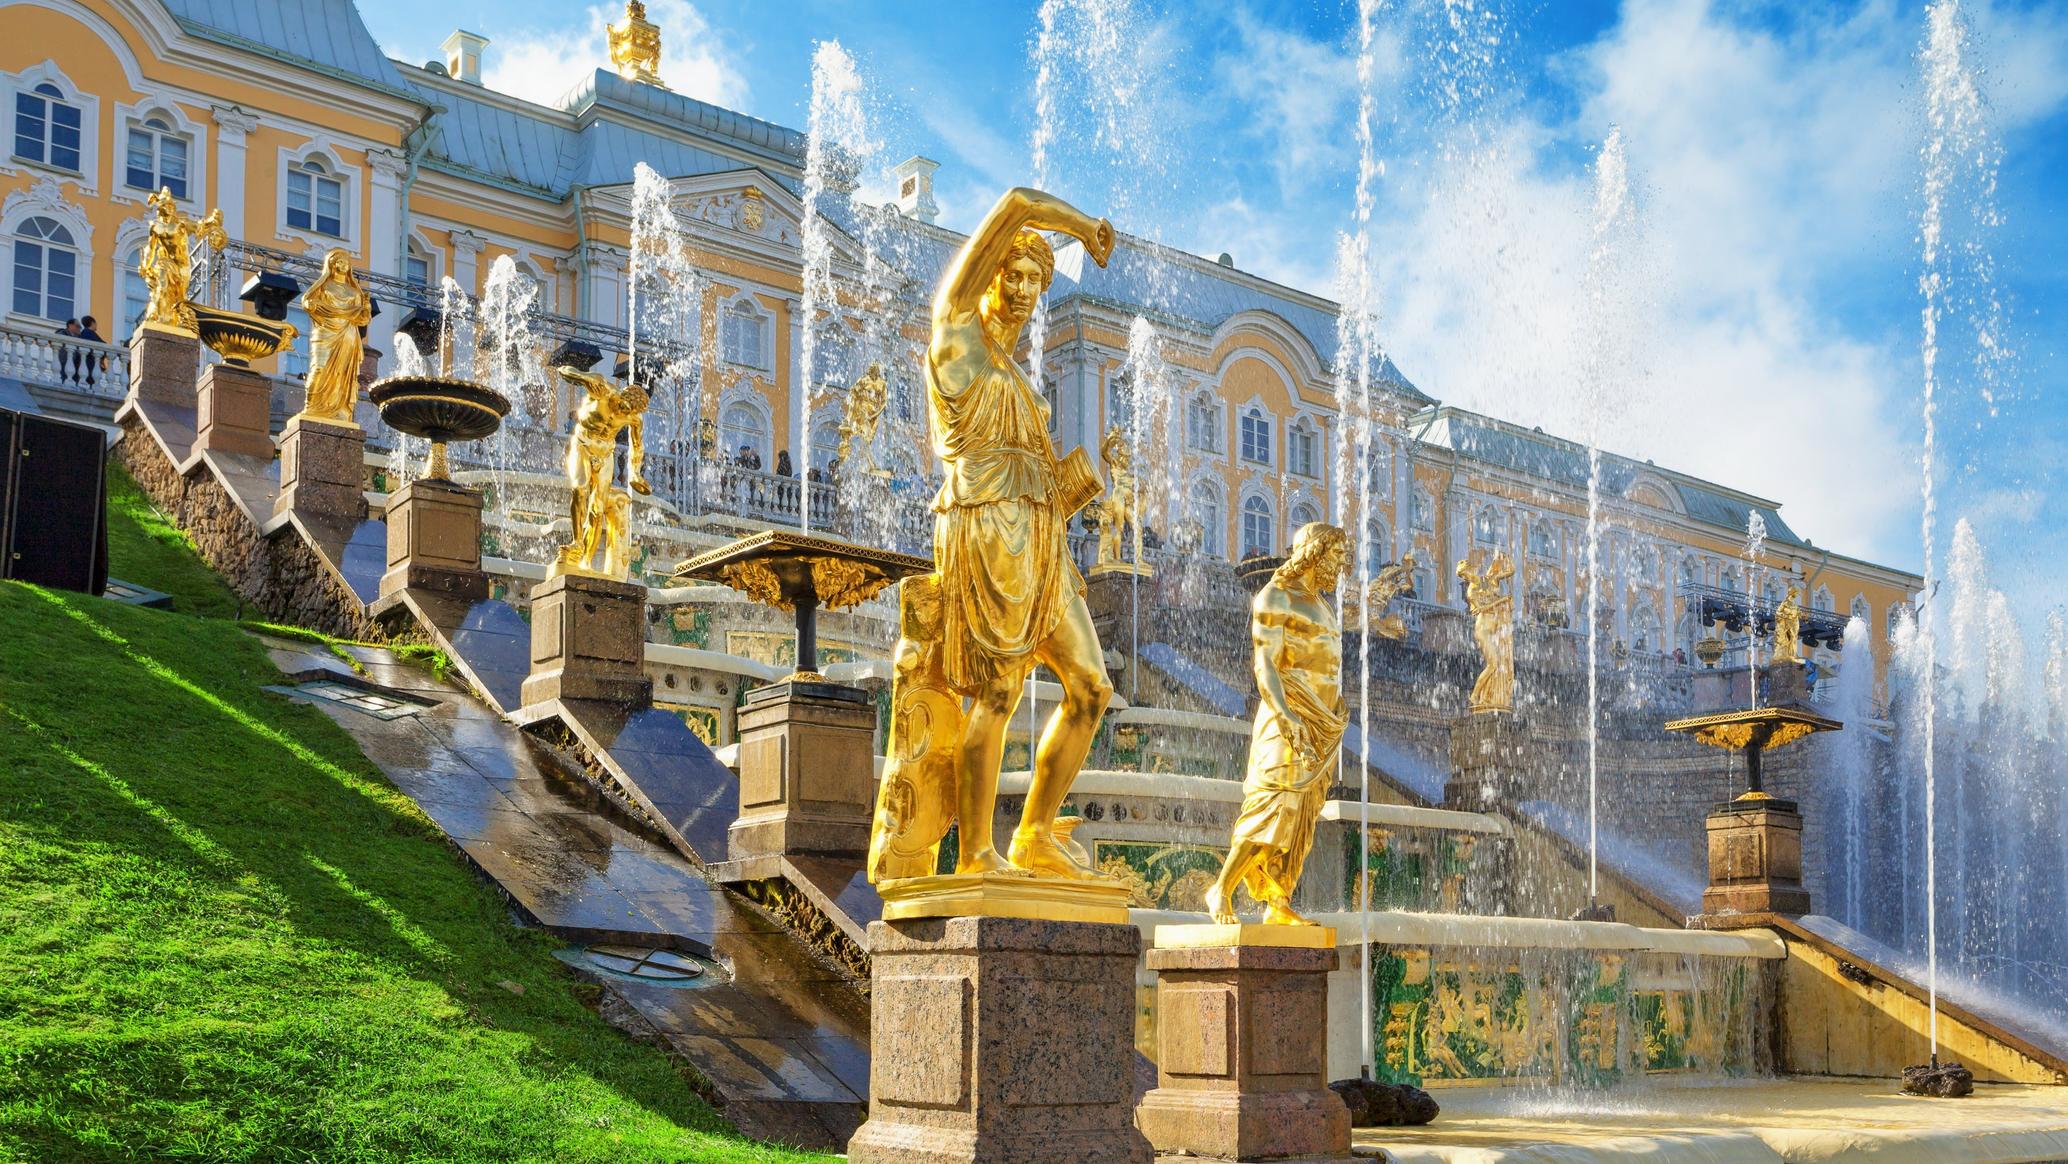 Петергоф — русский Версаль: великолепные виды на залив и шедевры дворцово-паркового искусства